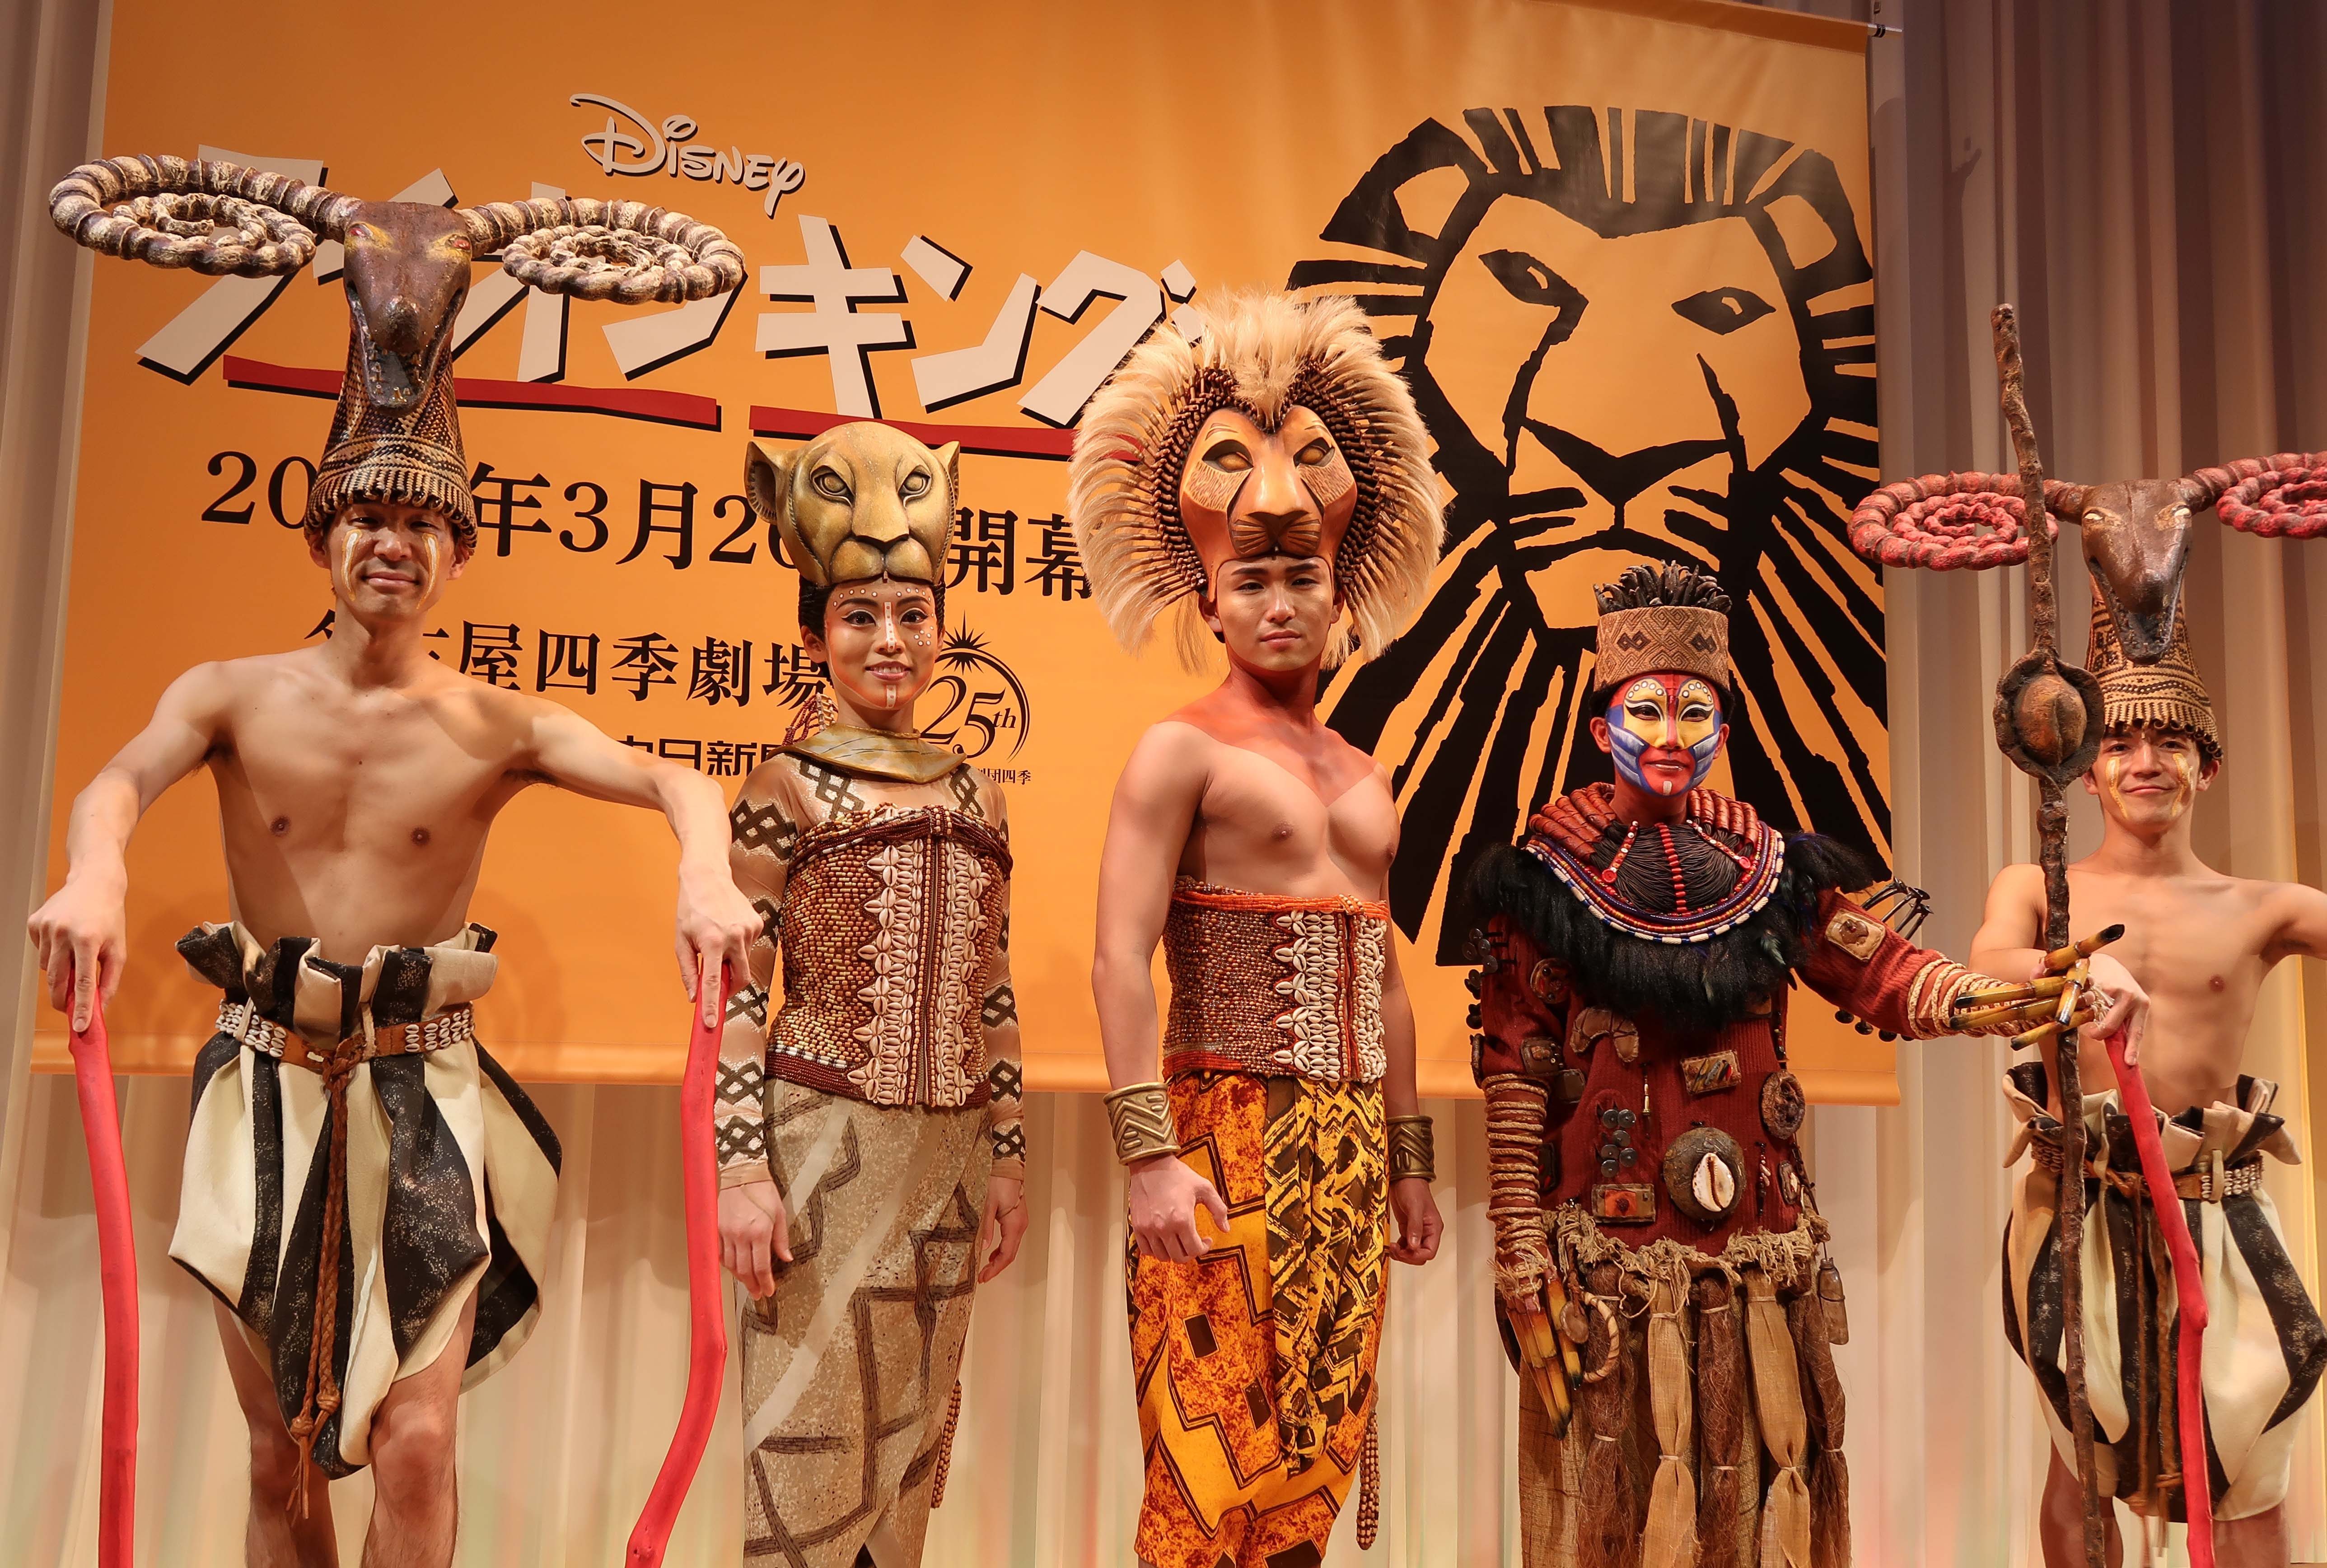 劇団四季のディズニーミュージカル『ライオンキング』が名古屋に帰って